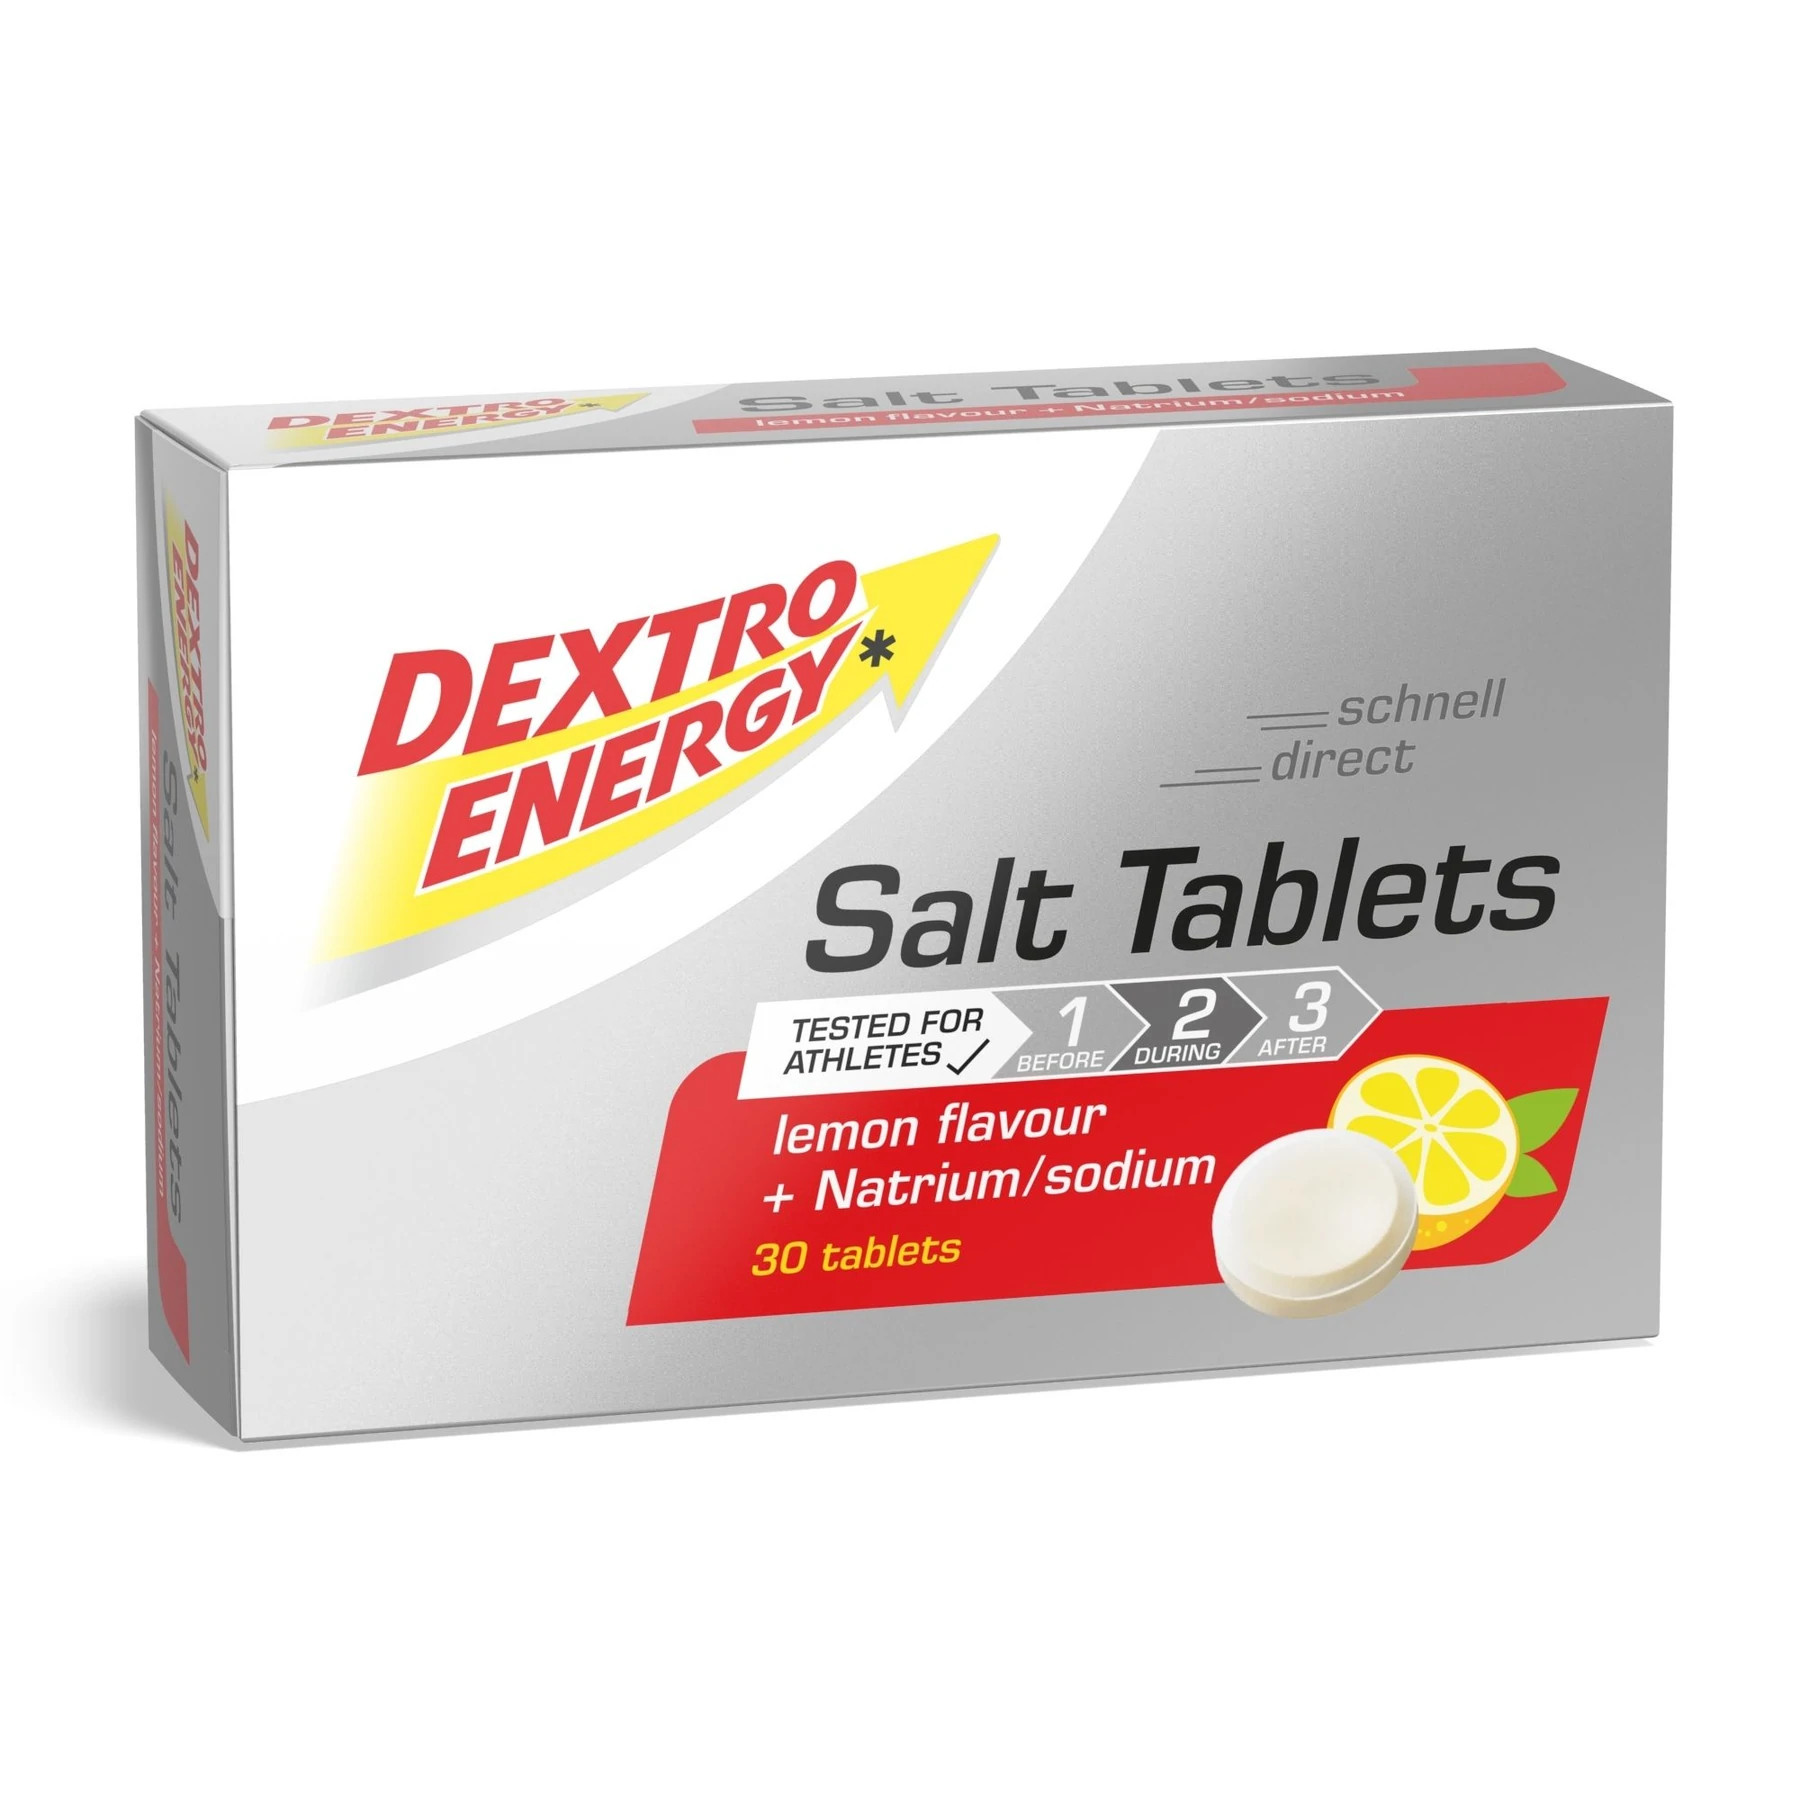 Productfoto van Dextro Energy Salt Tablets - Effervescent tablets - 54g